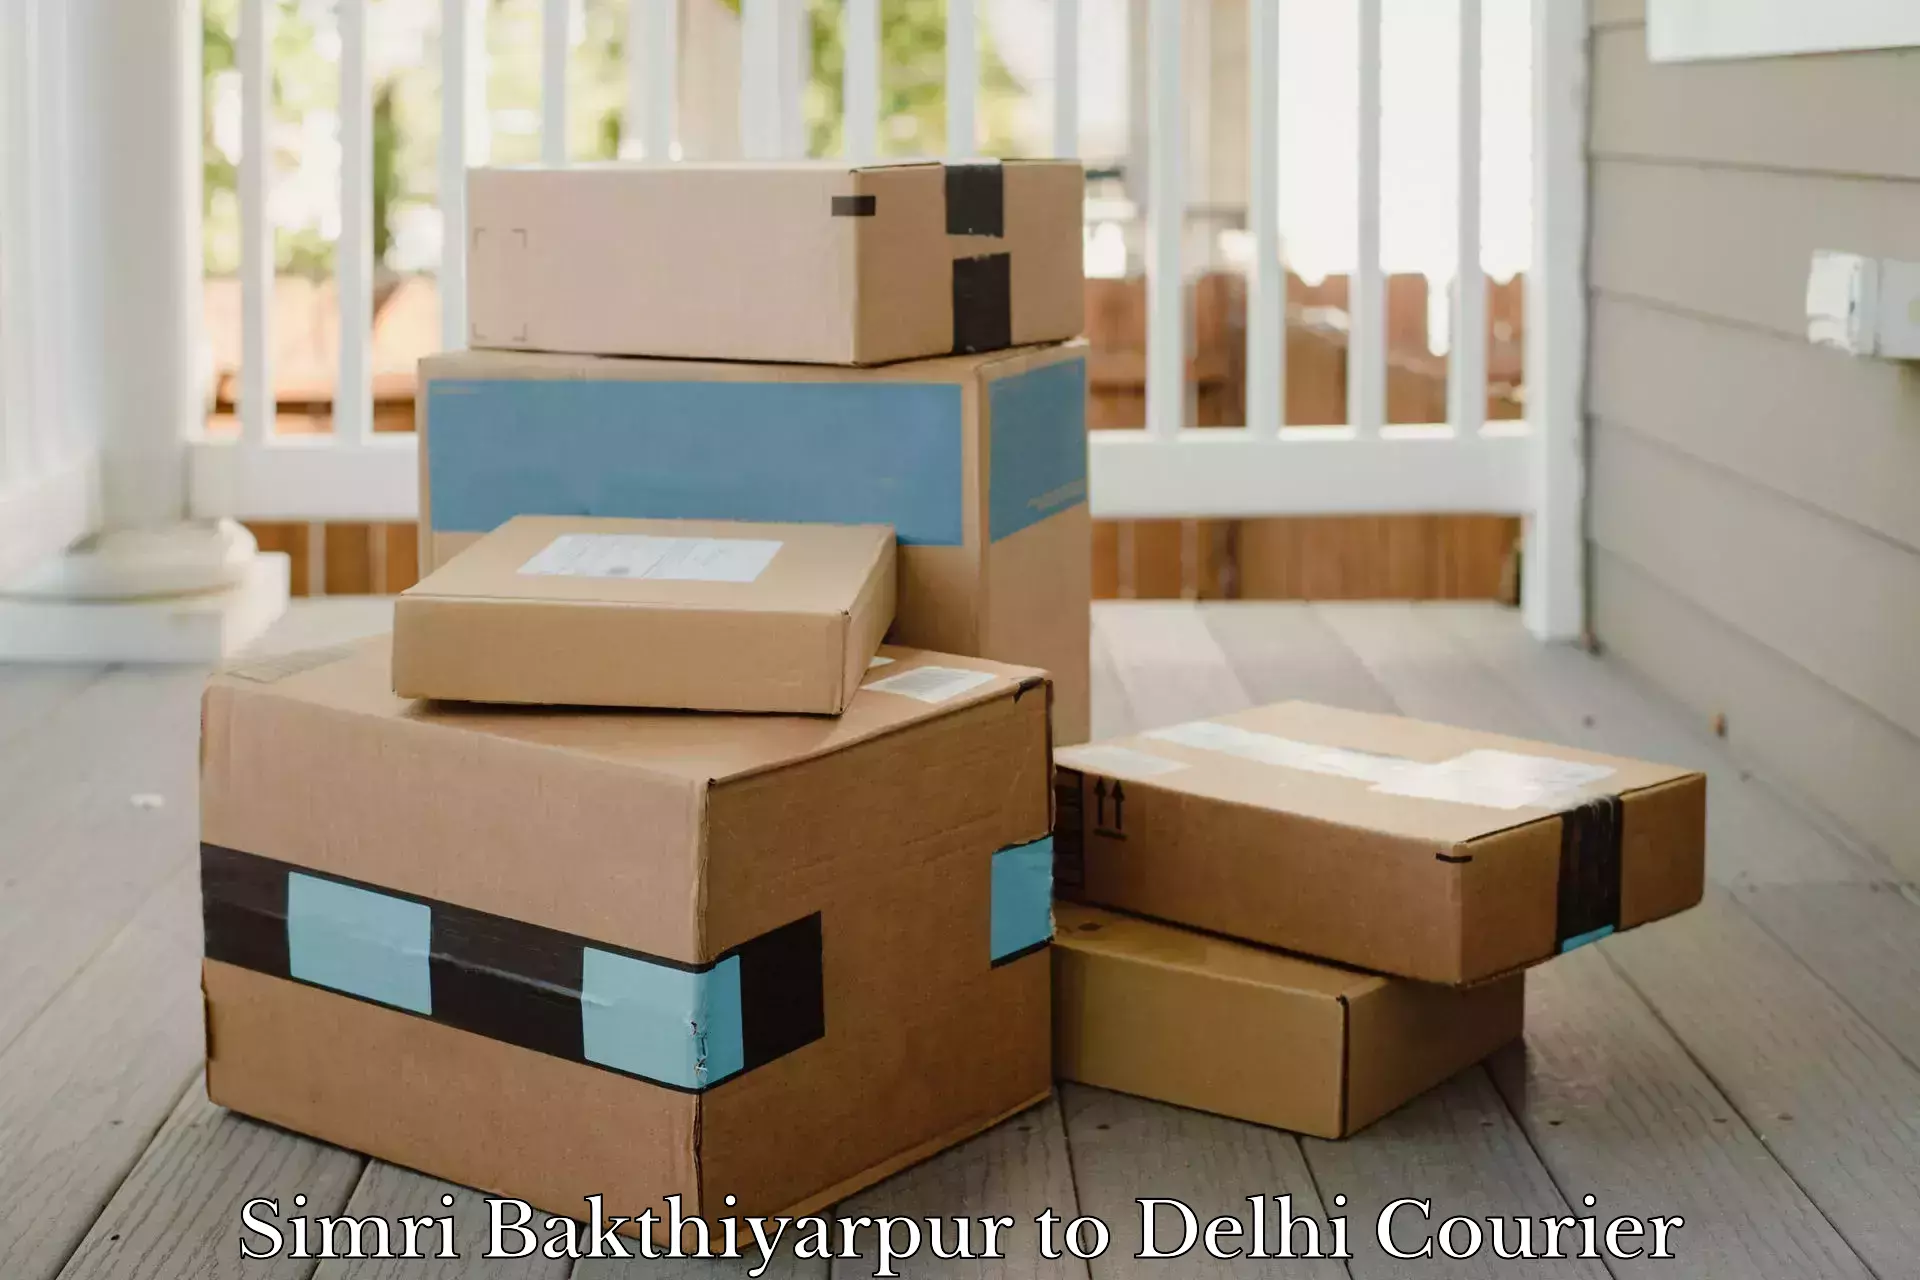 Urban courier service Simri Bakthiyarpur to Sarojini Nagar